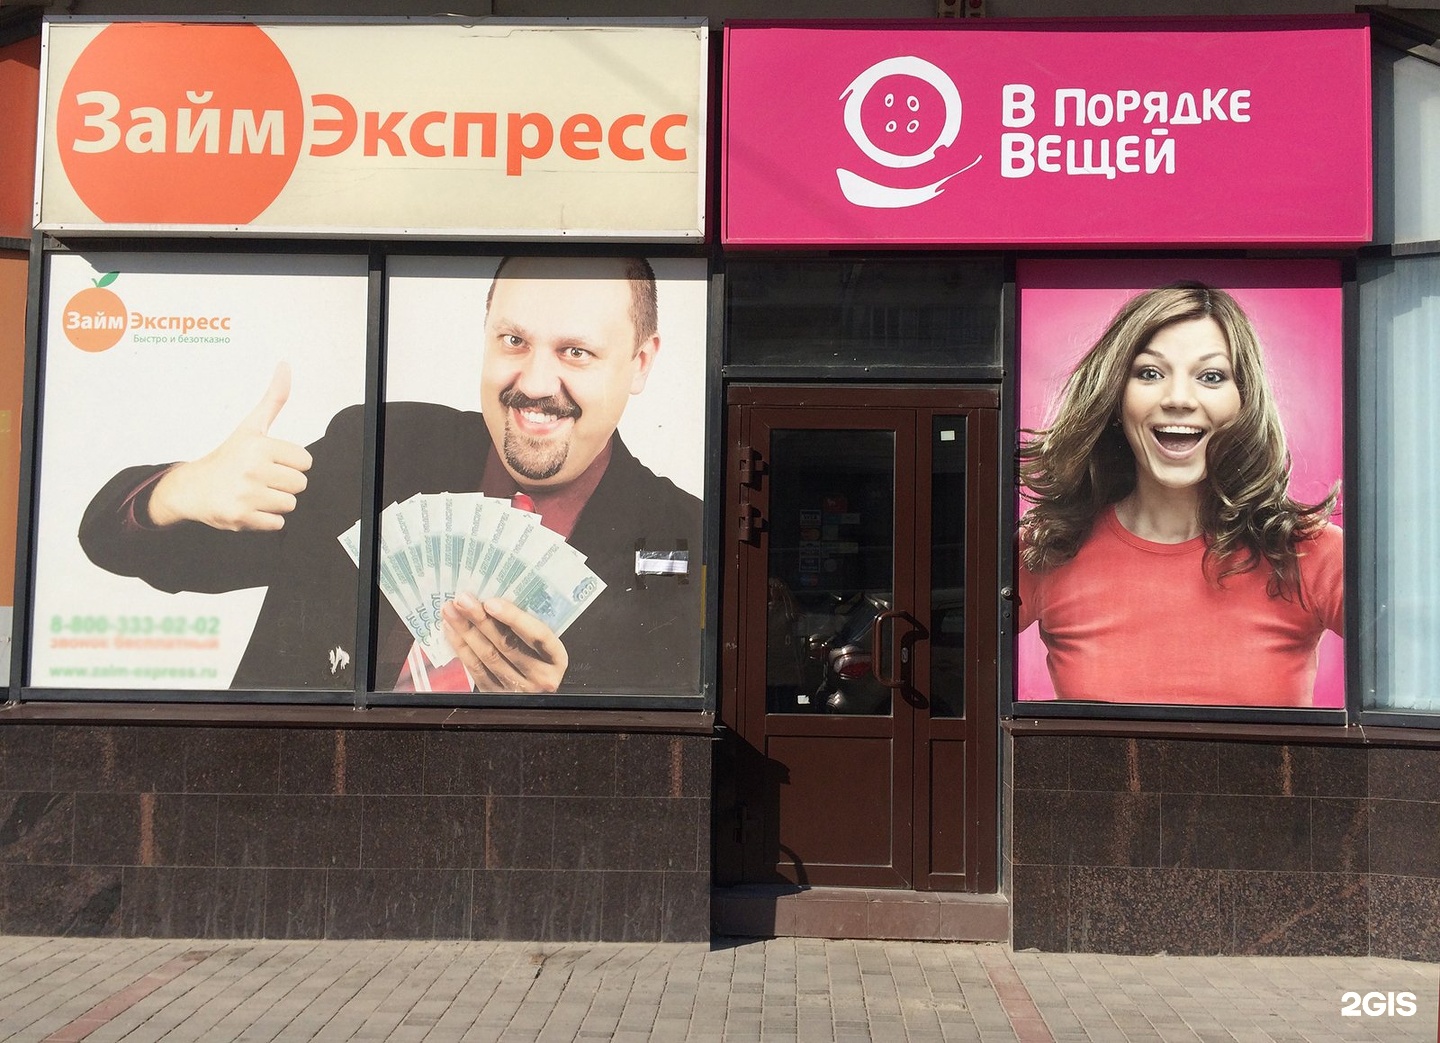 Займ экспресс Коломенская фото. Банк пойдем на Краснознаменской Волгоград. Экспресс займ реклама.